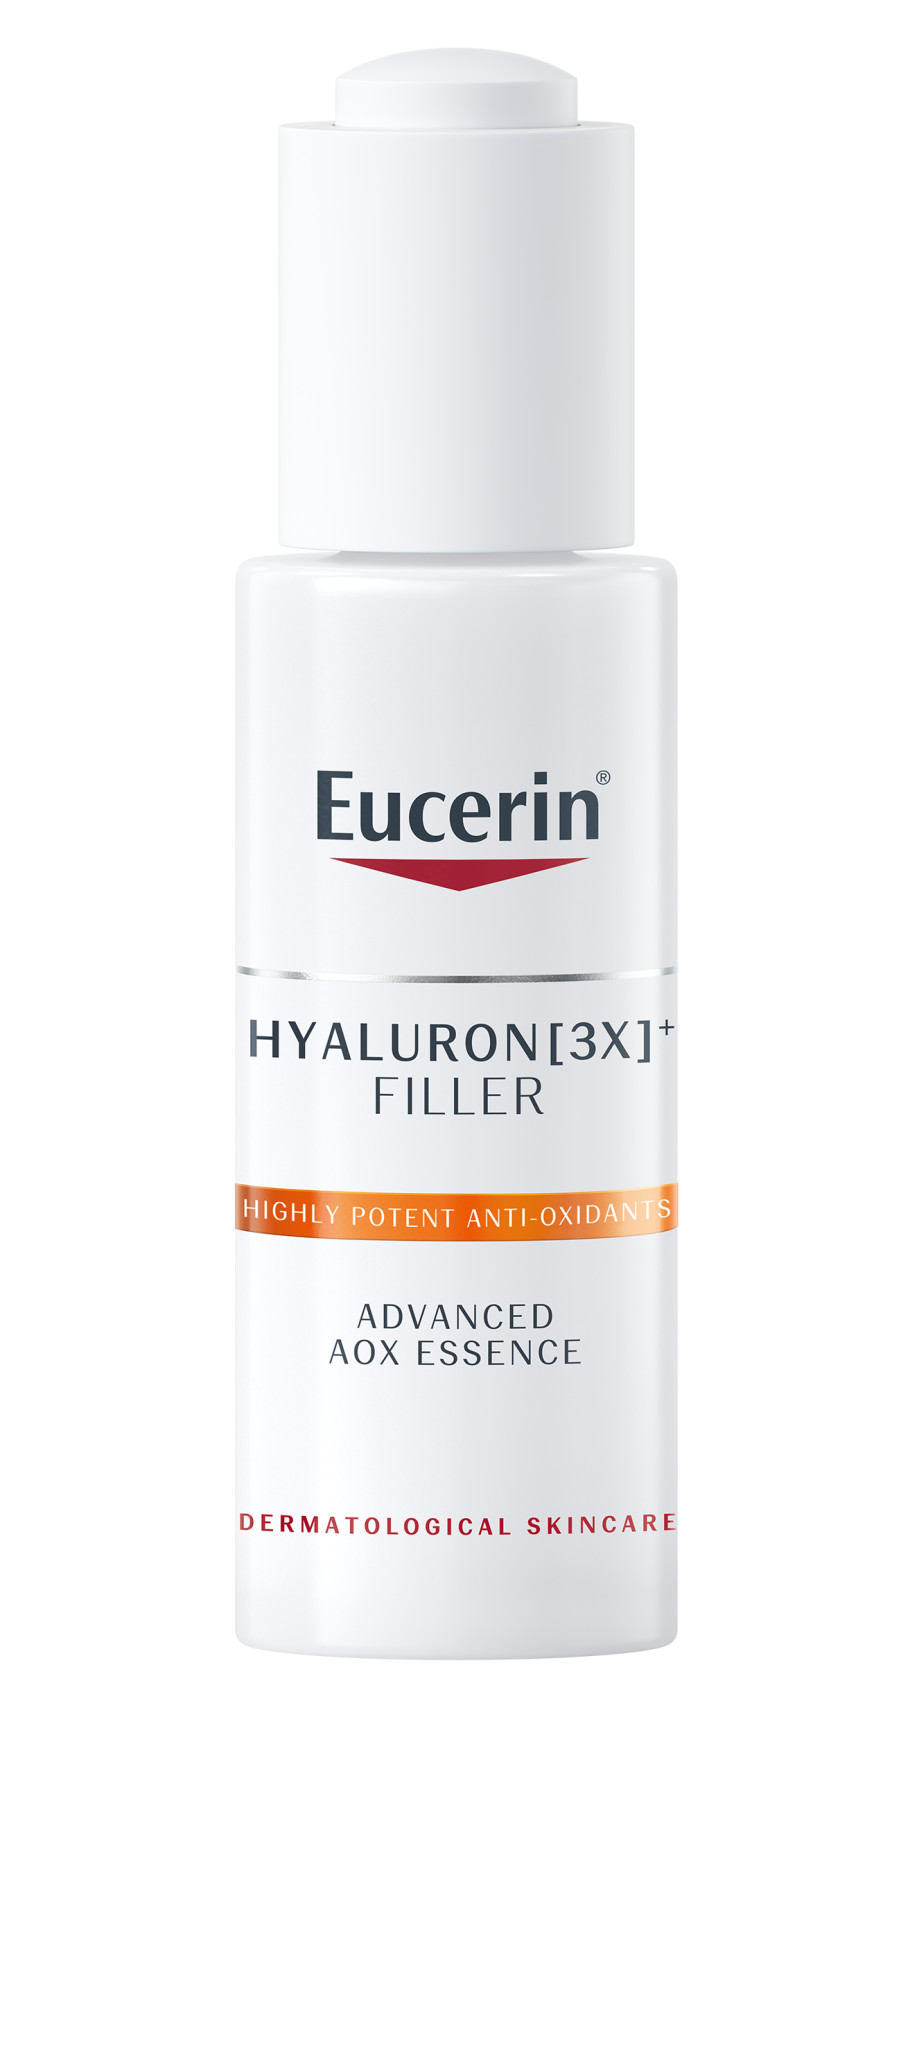 Tinh chất chống oxy hoá và thu nhỏ lỗ chân lông Eucerin AOX Essence.